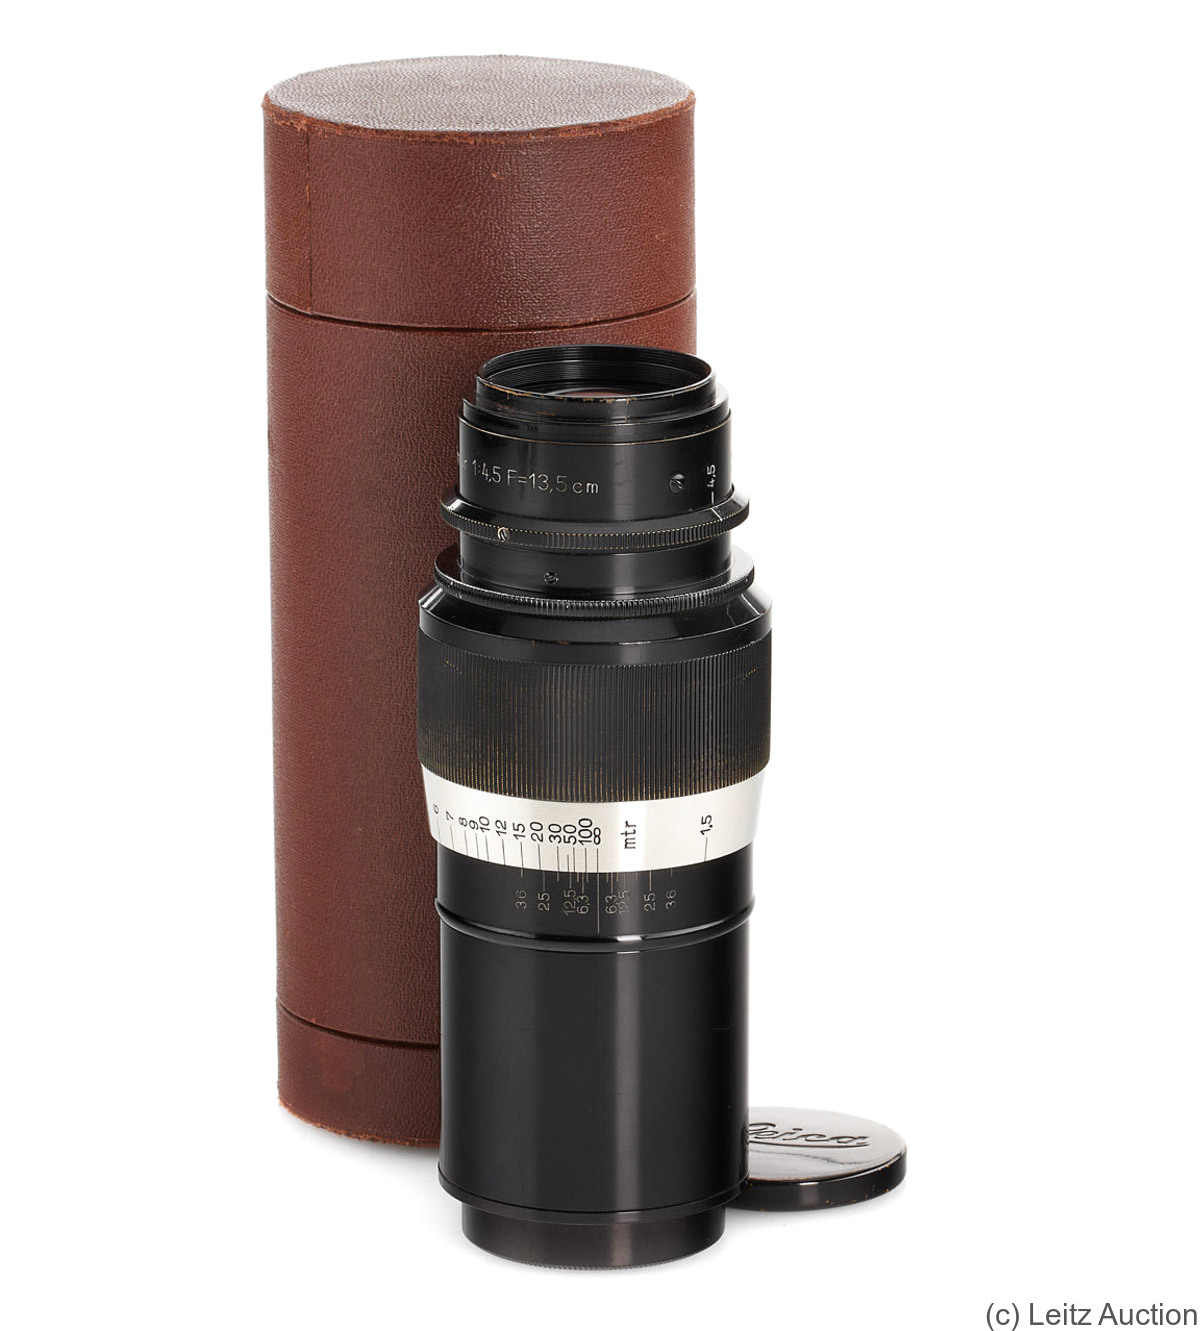 Leitz: 135mm (13.5cm) f4.5 Elmar (SM, black/nickel) camera